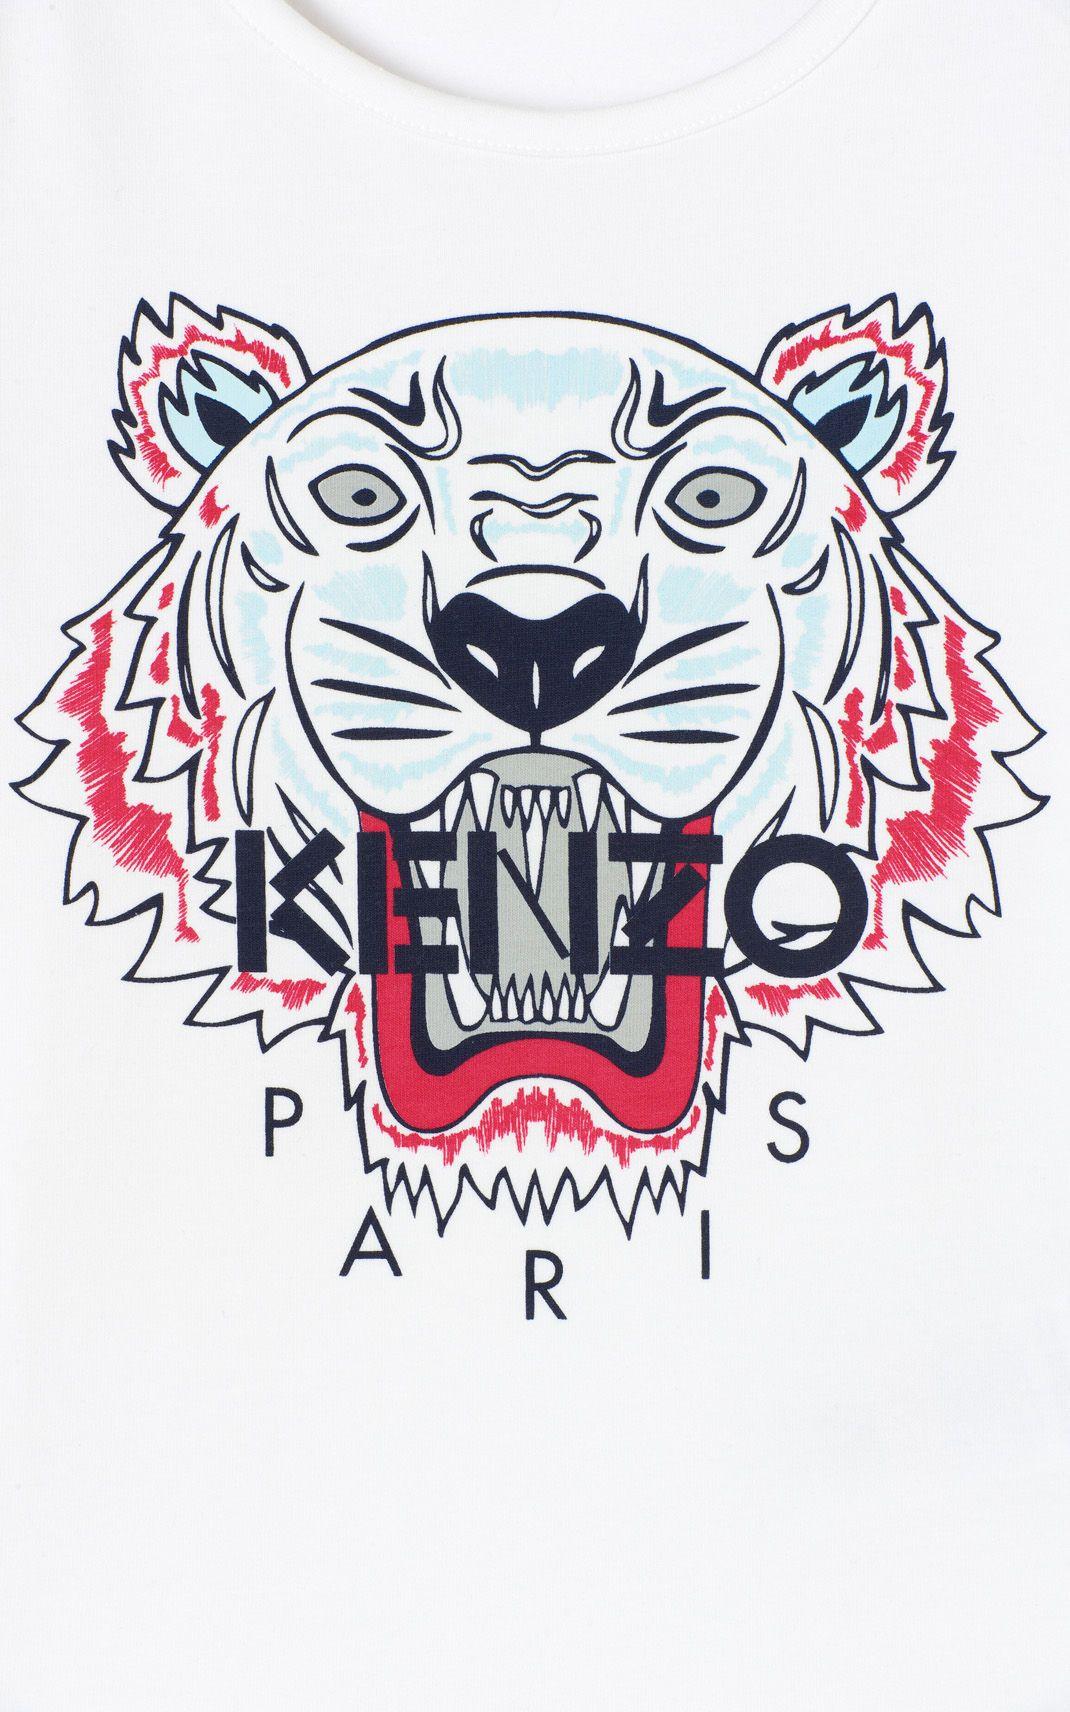 Kenzo Paris Wallpapers - Wallpaper Cave